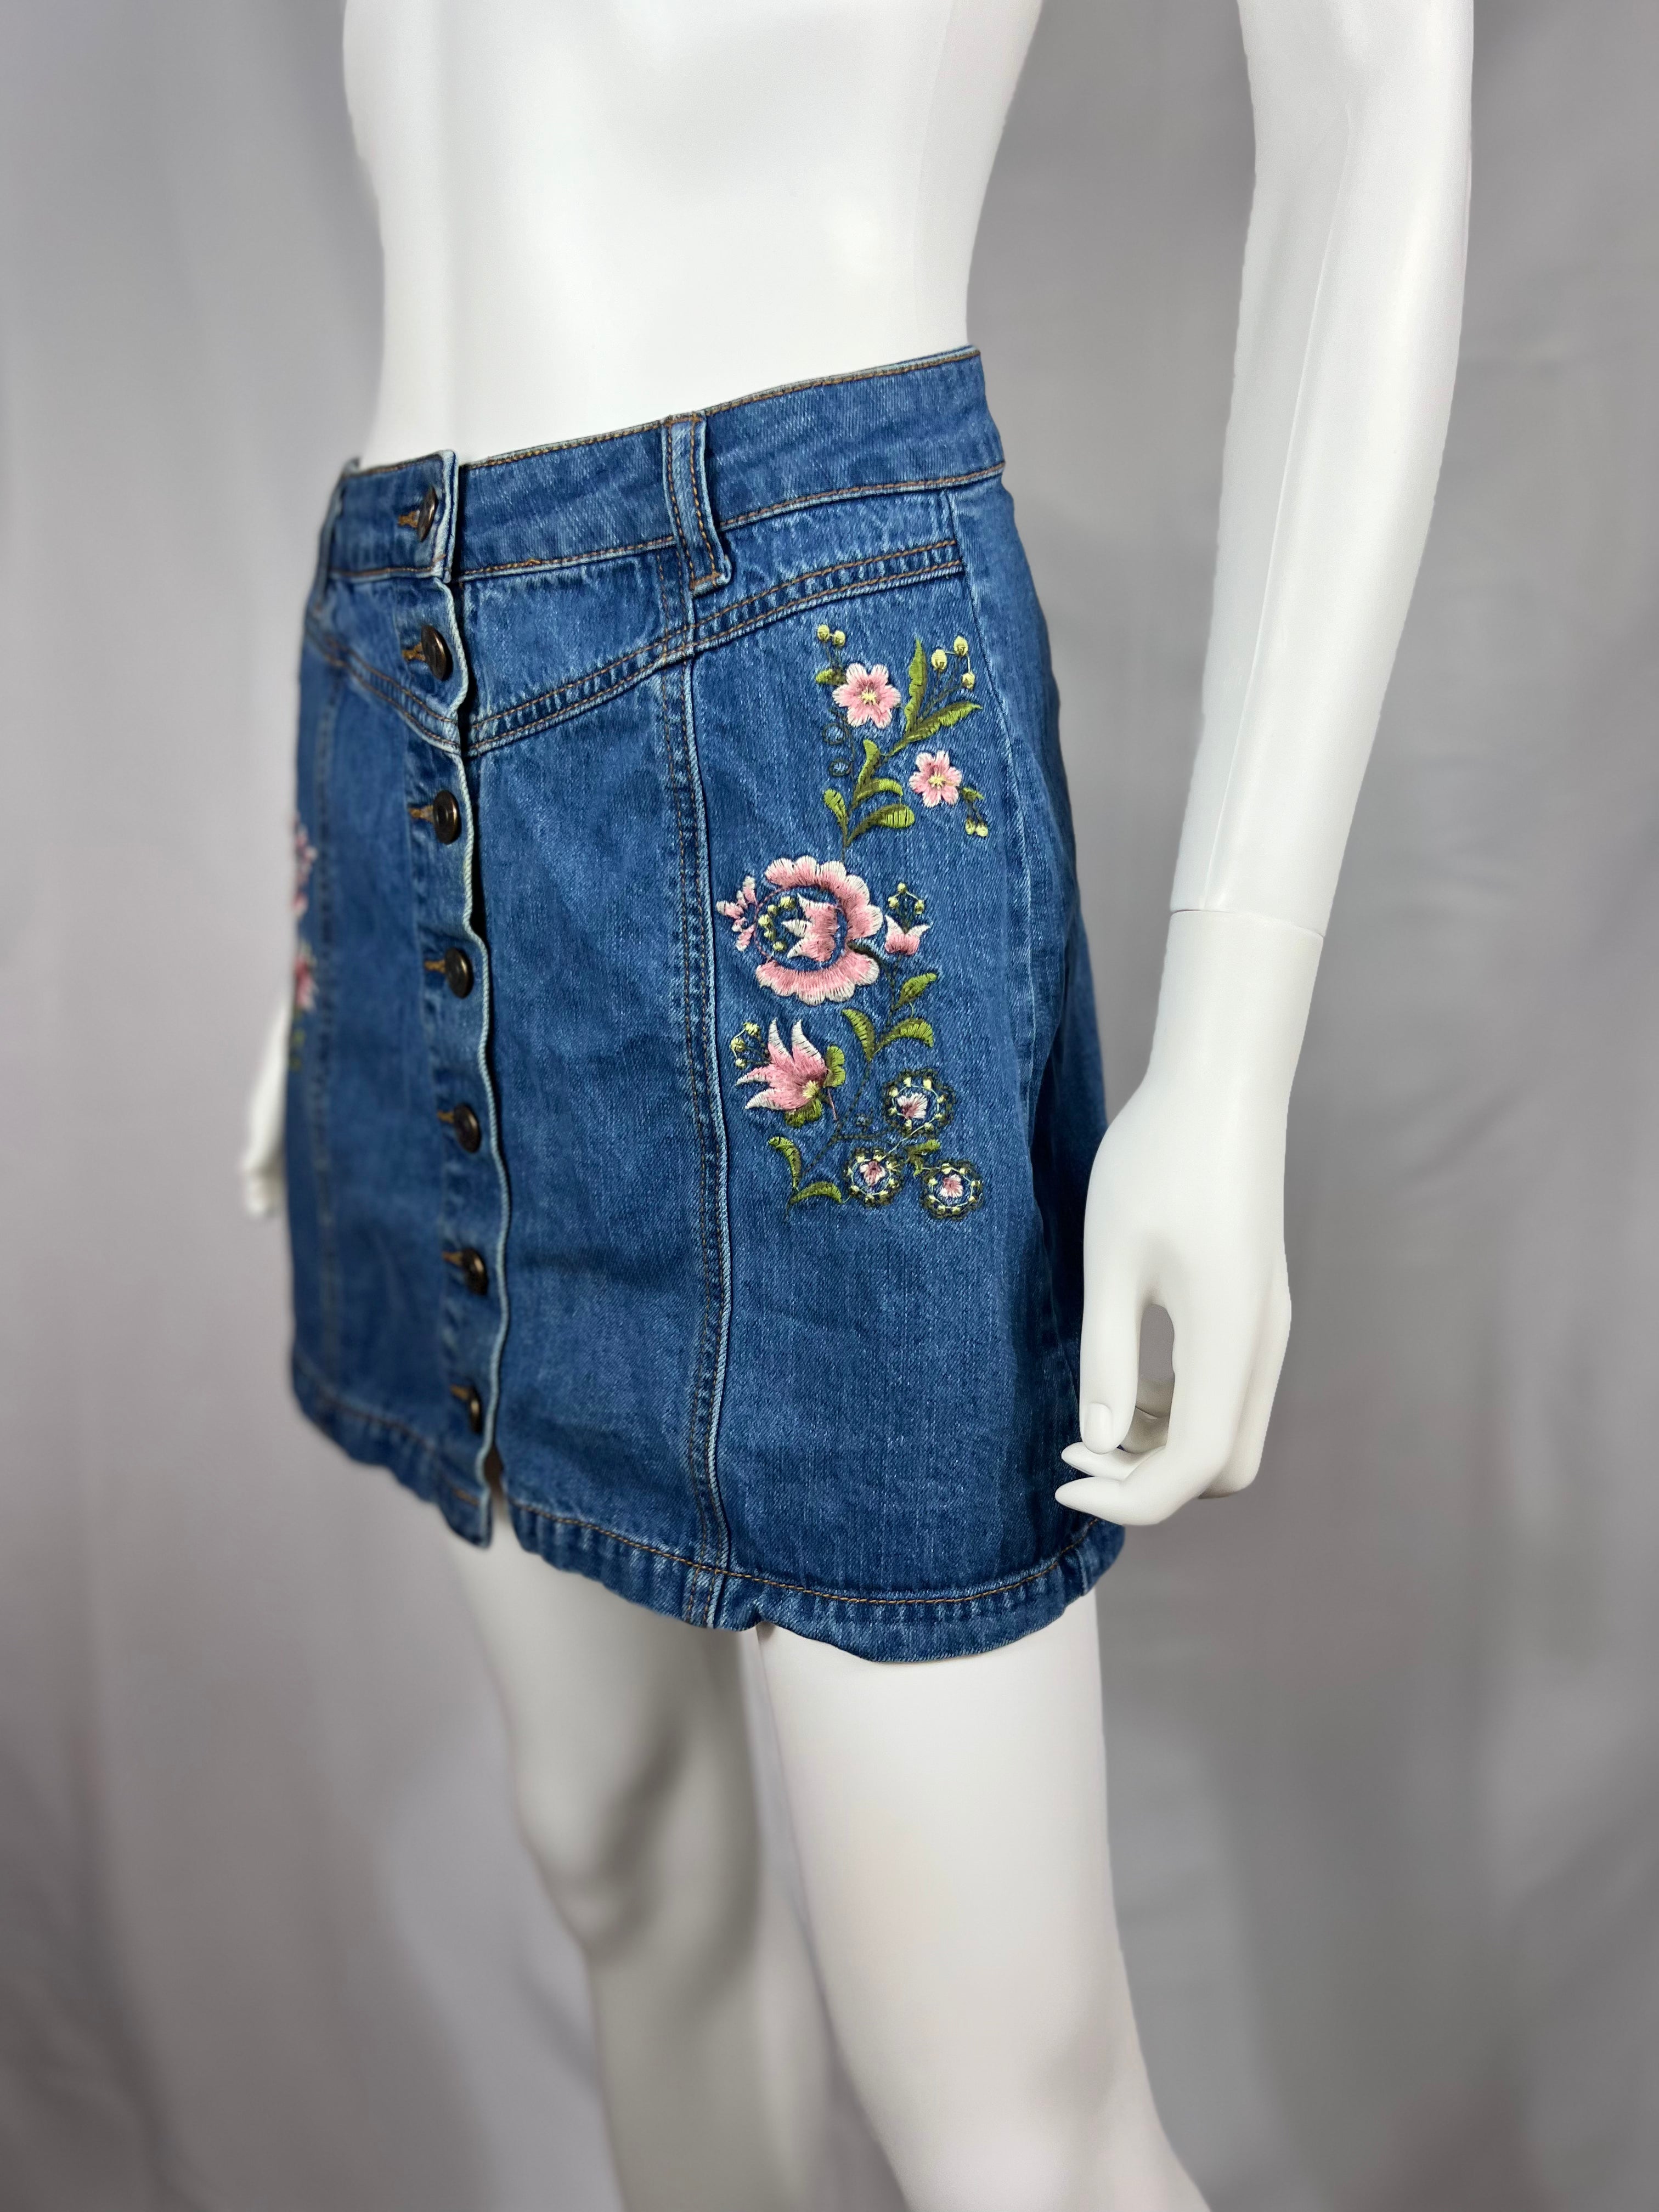 00's Embroidered Denim Skirt